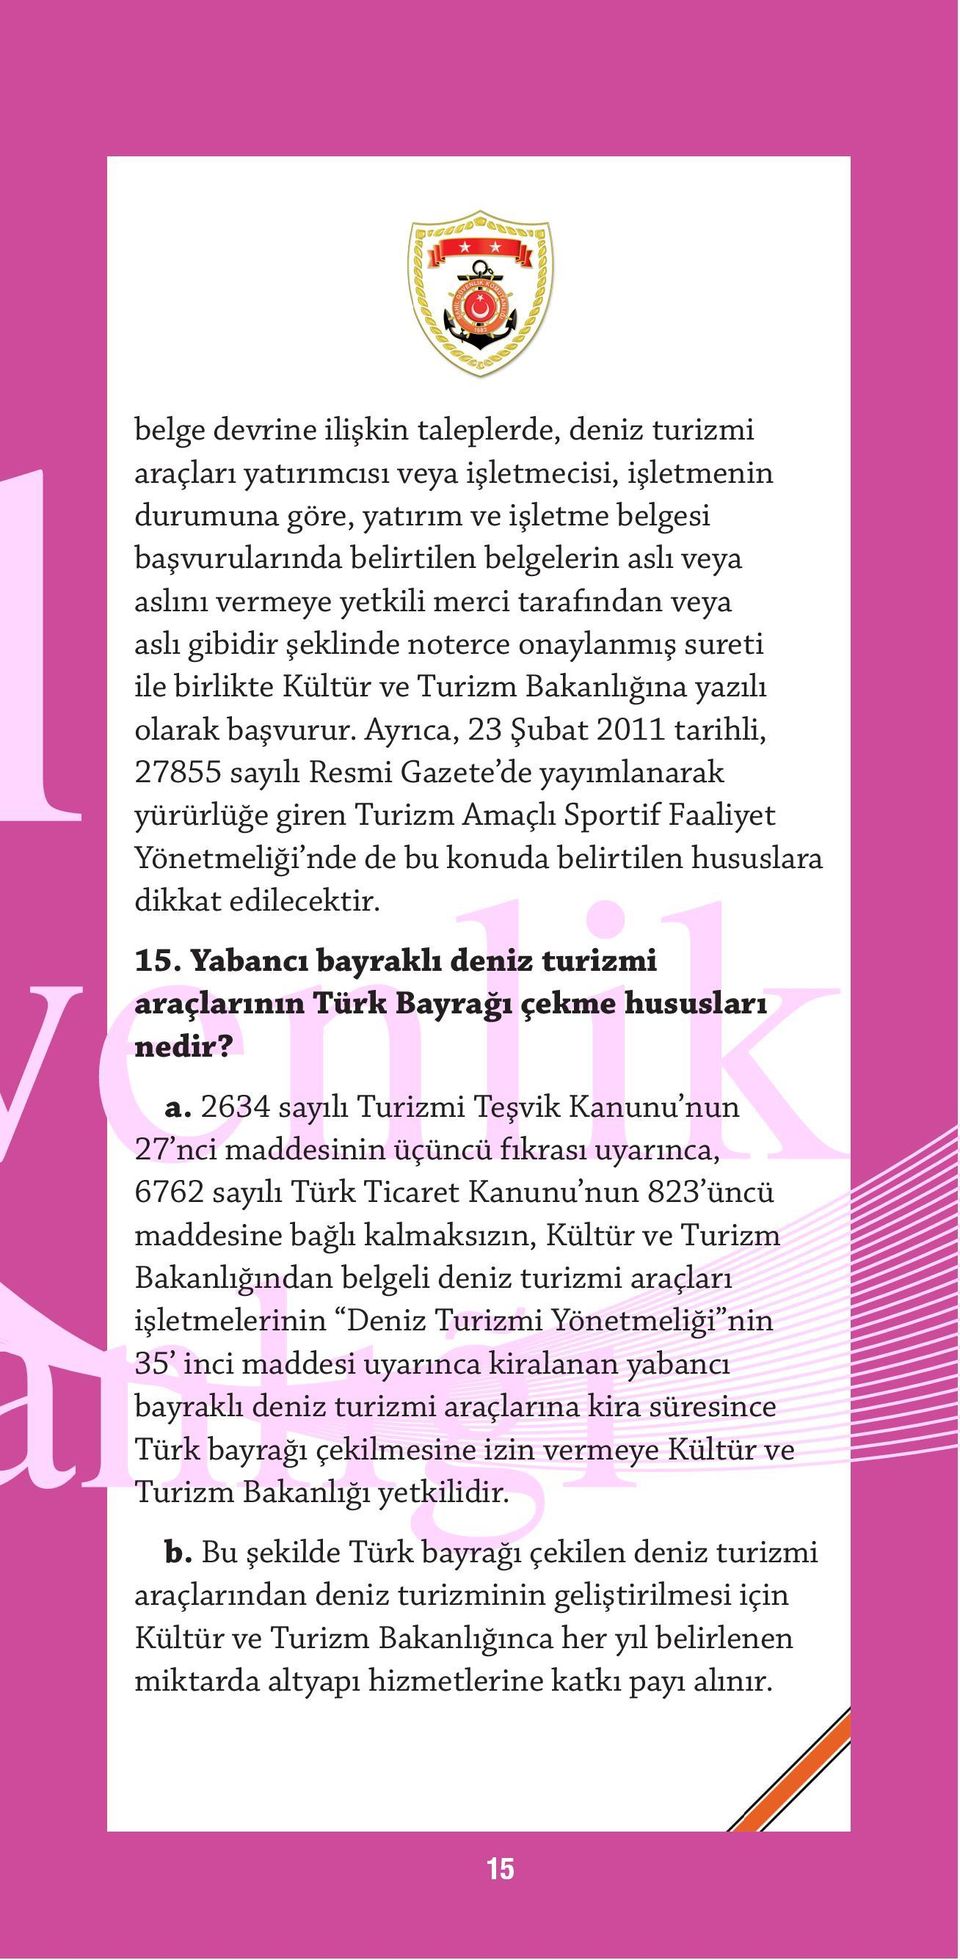 Ayrıca, 23 Şubat 2011 tarihli, 27855 sayılı Resmi Gazete de yayımlanarak yürürlüğe giren Turizm Amaçlı Sportif Faaliyet Yönetmeliği nde de bu konuda belirtilen hususlara dikkat edilecektir. 15.